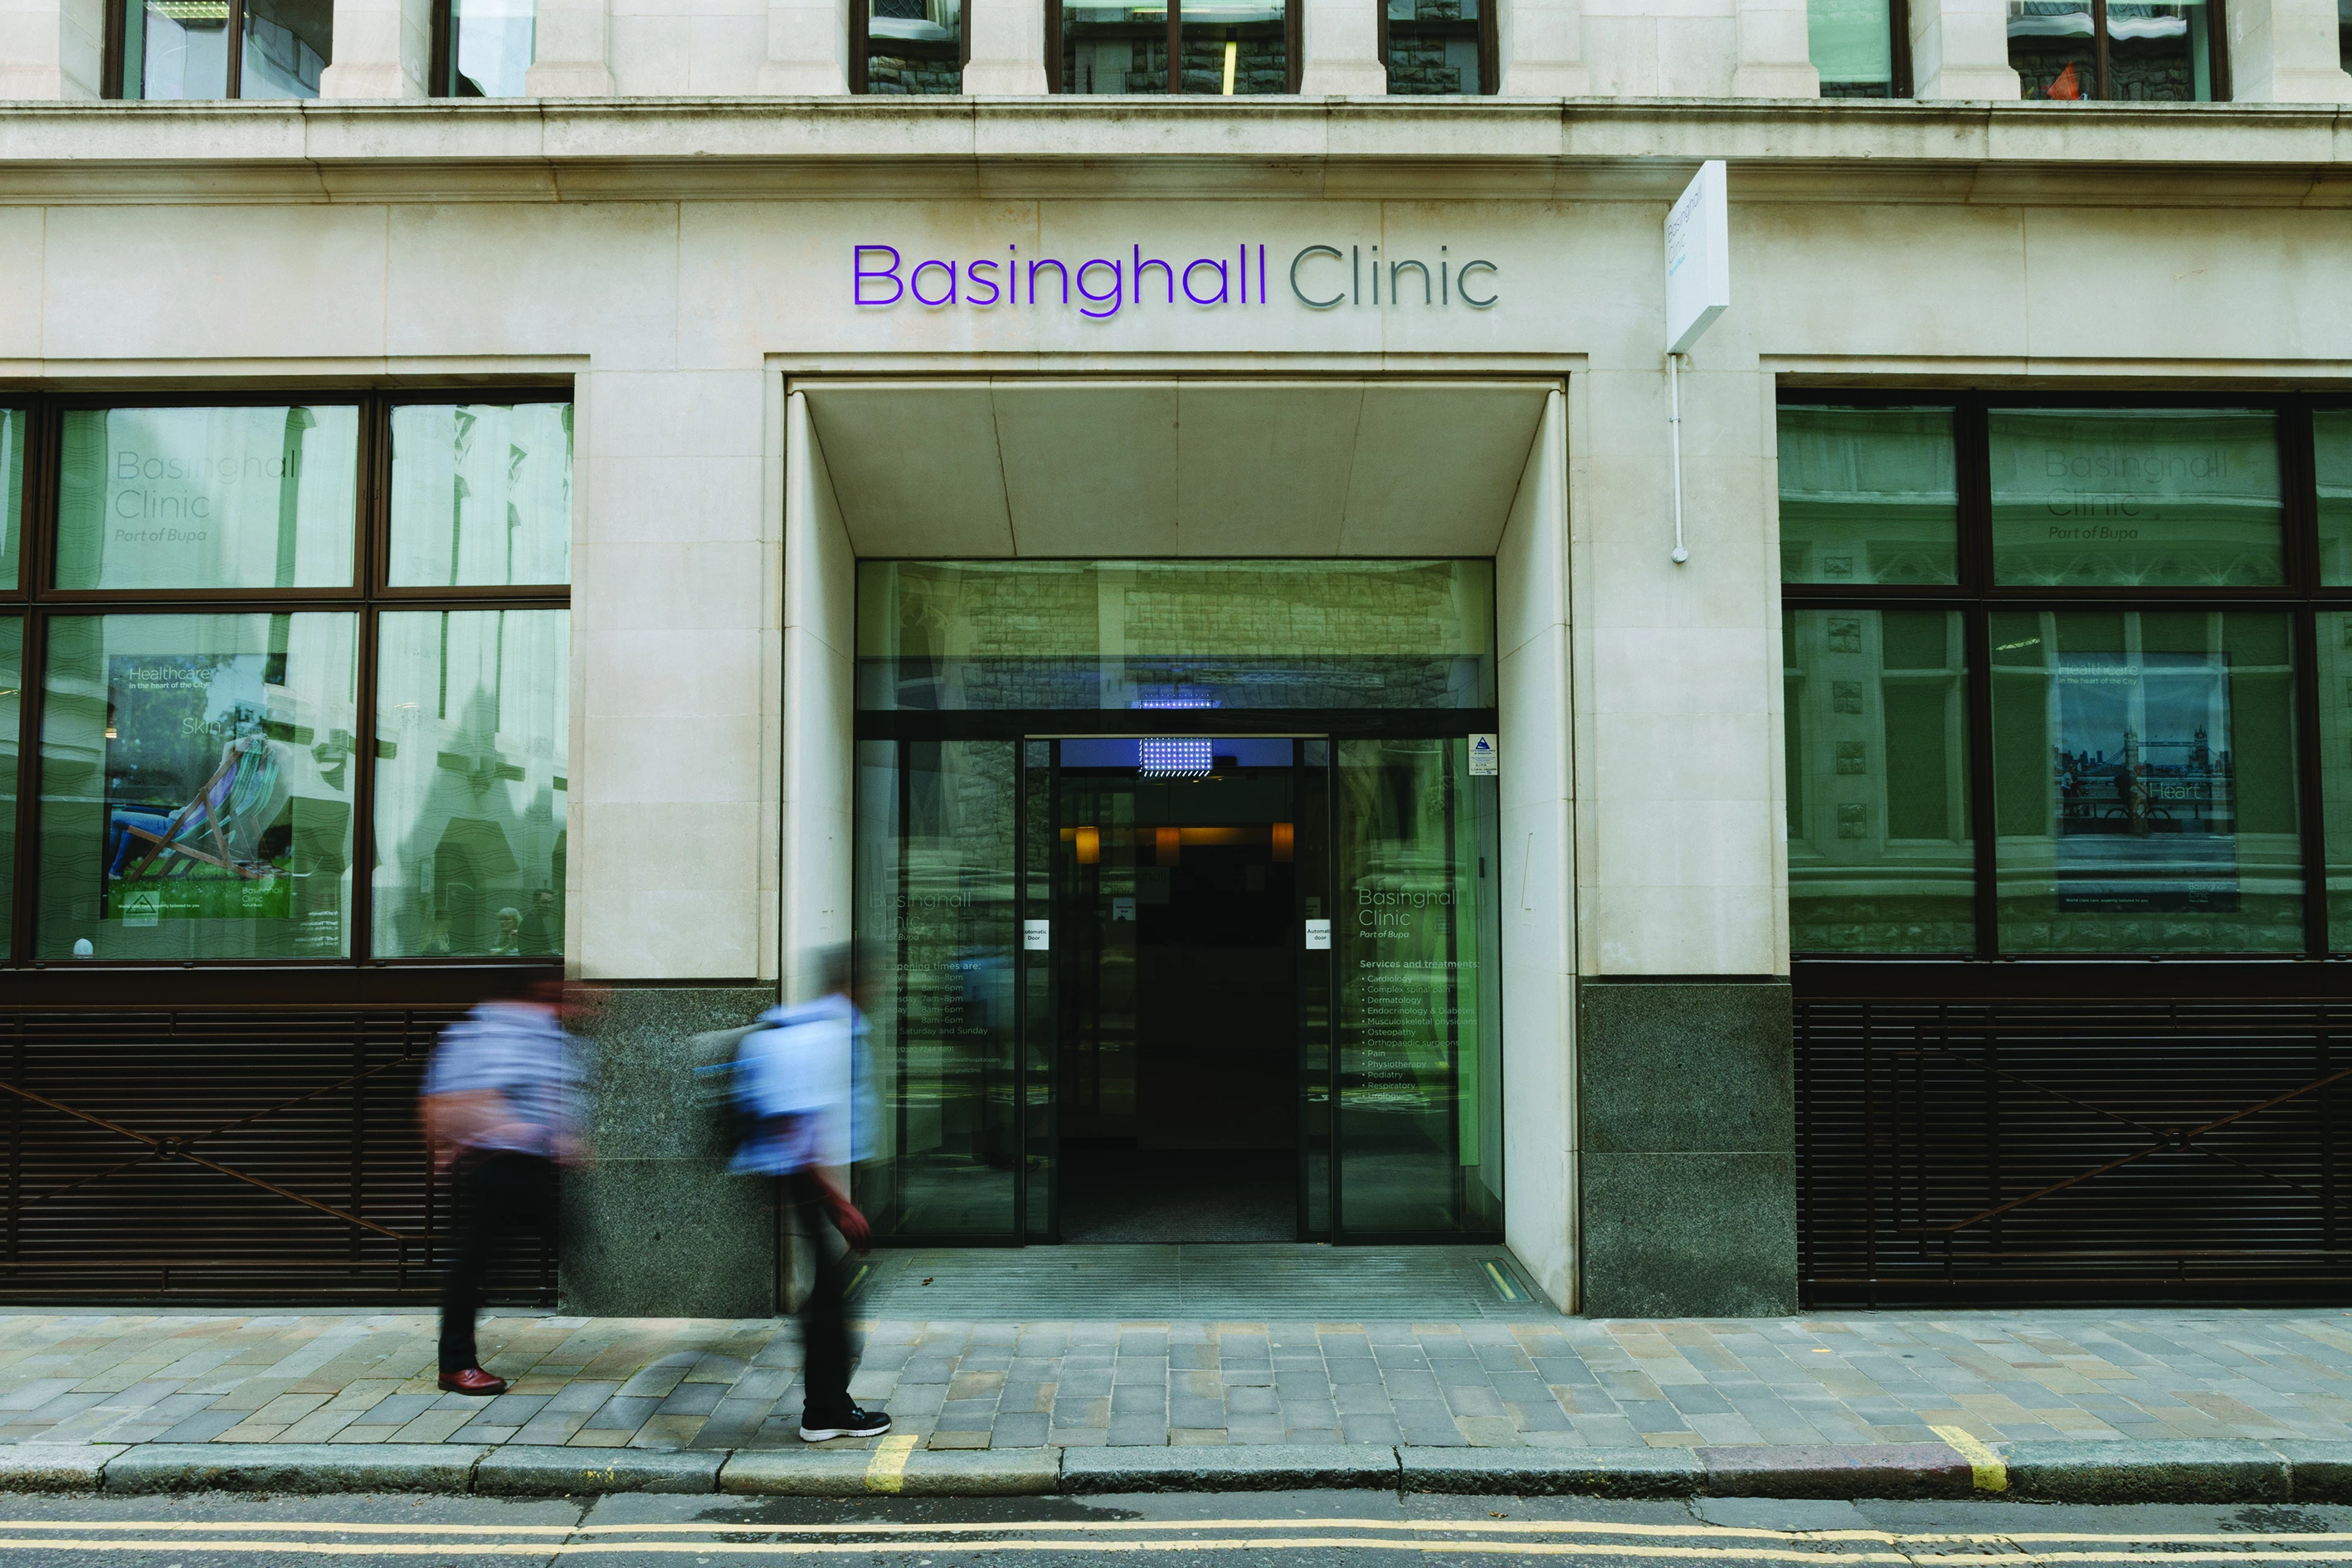 Basinghall Clinic